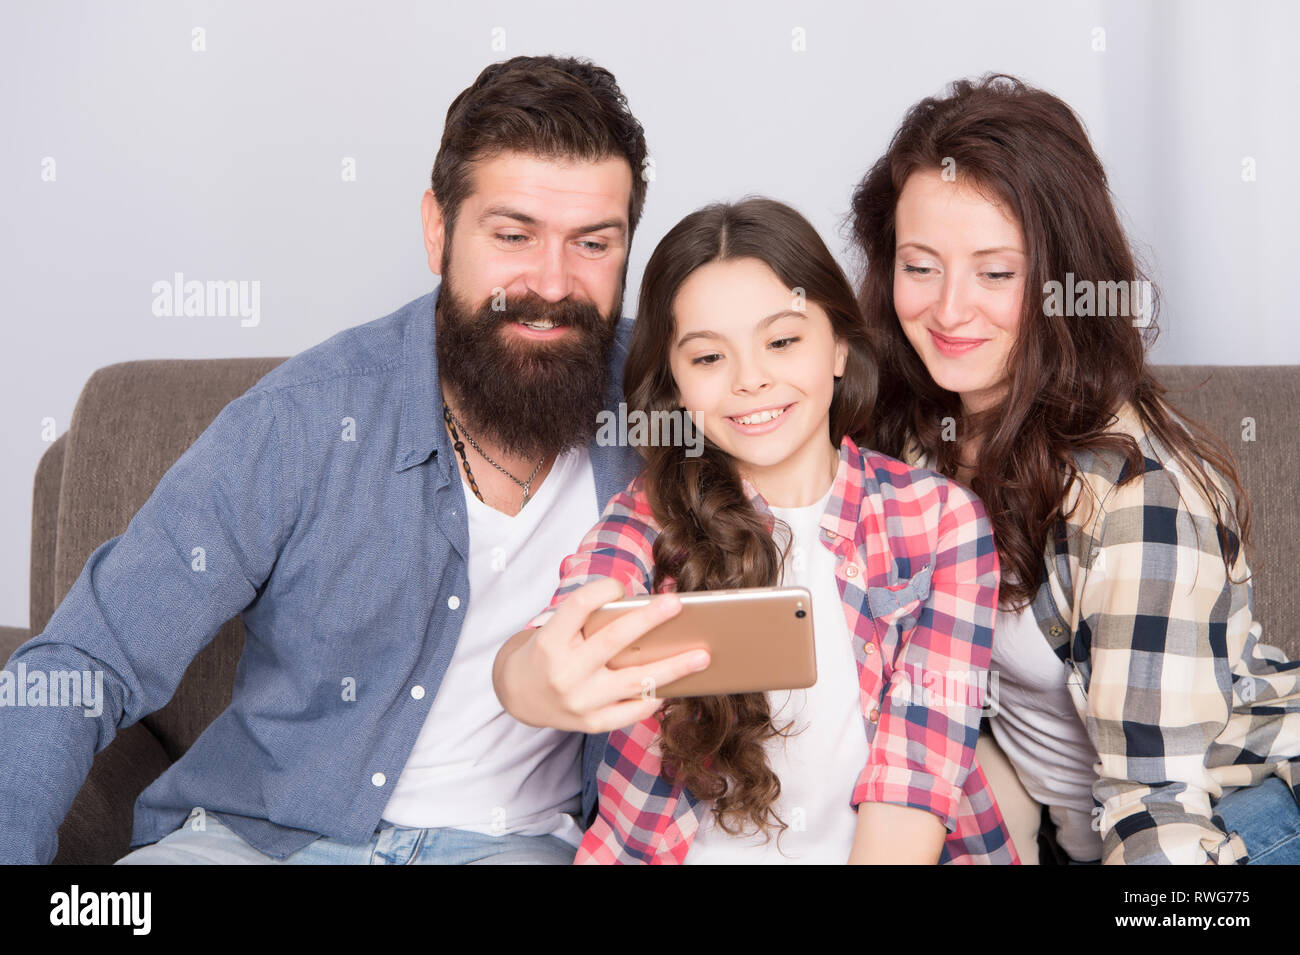 Familie selfie. Familie verbringen Wochenende zusammen. Verwendung des Smartphones für selfie. Freundliche Familie gemeinsam Spaß zu haben. Mama, Papa und Tochter entspannt auf einer Couch. Familie posieren für Fotos. Glückliche Momente festzuhalten. Stockfoto